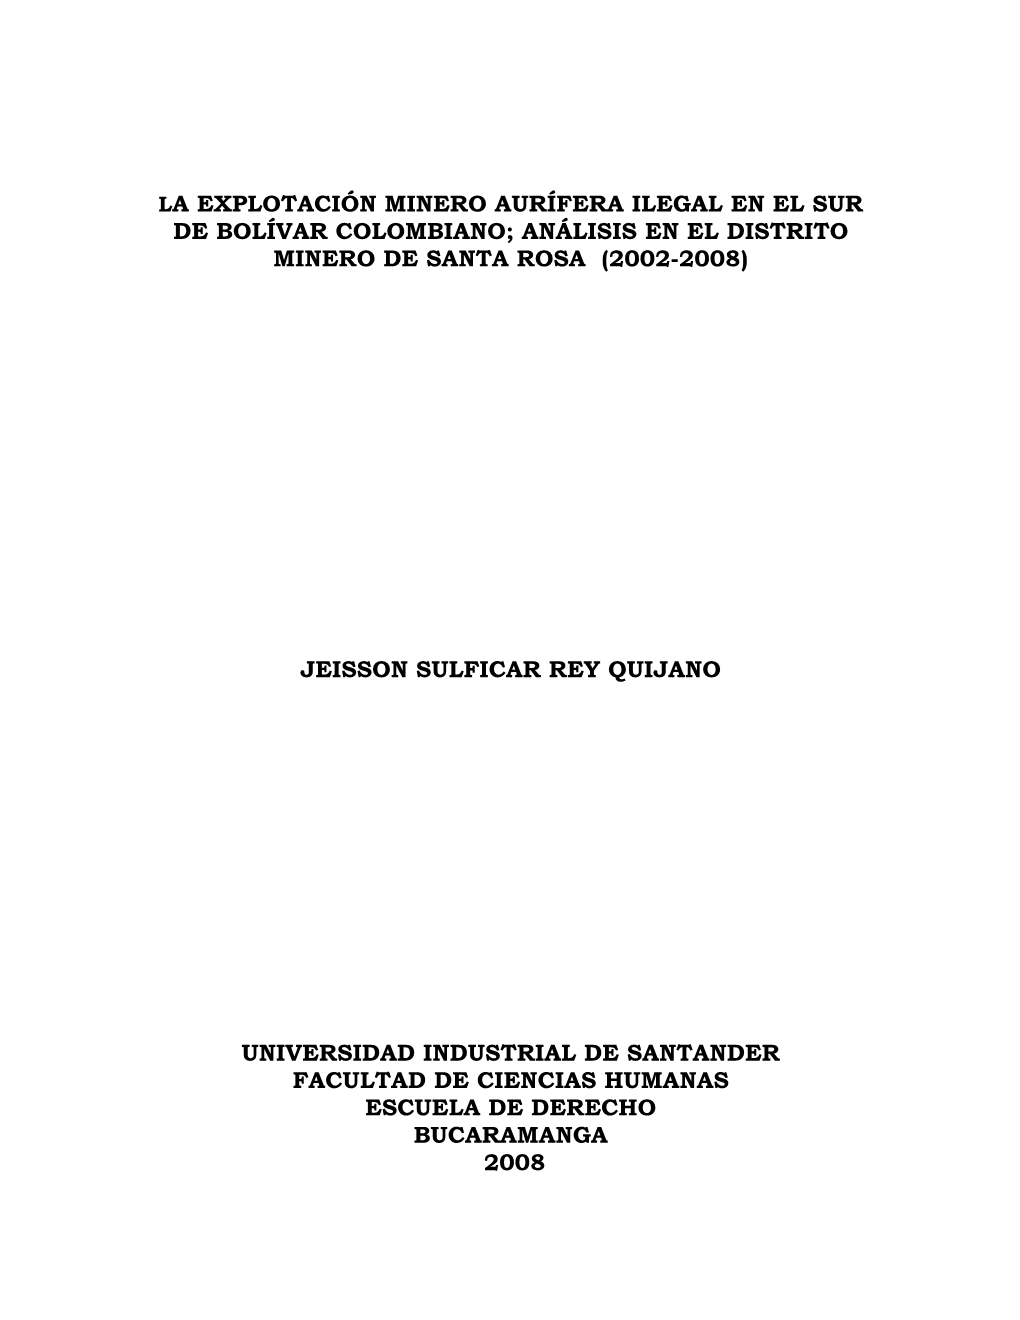 La Explotación Minero Aurífera Ilegal En El Sur De Bolívar Colombiano; Análisis En El Distrito Minero De Santa Rosa (2002-2008)